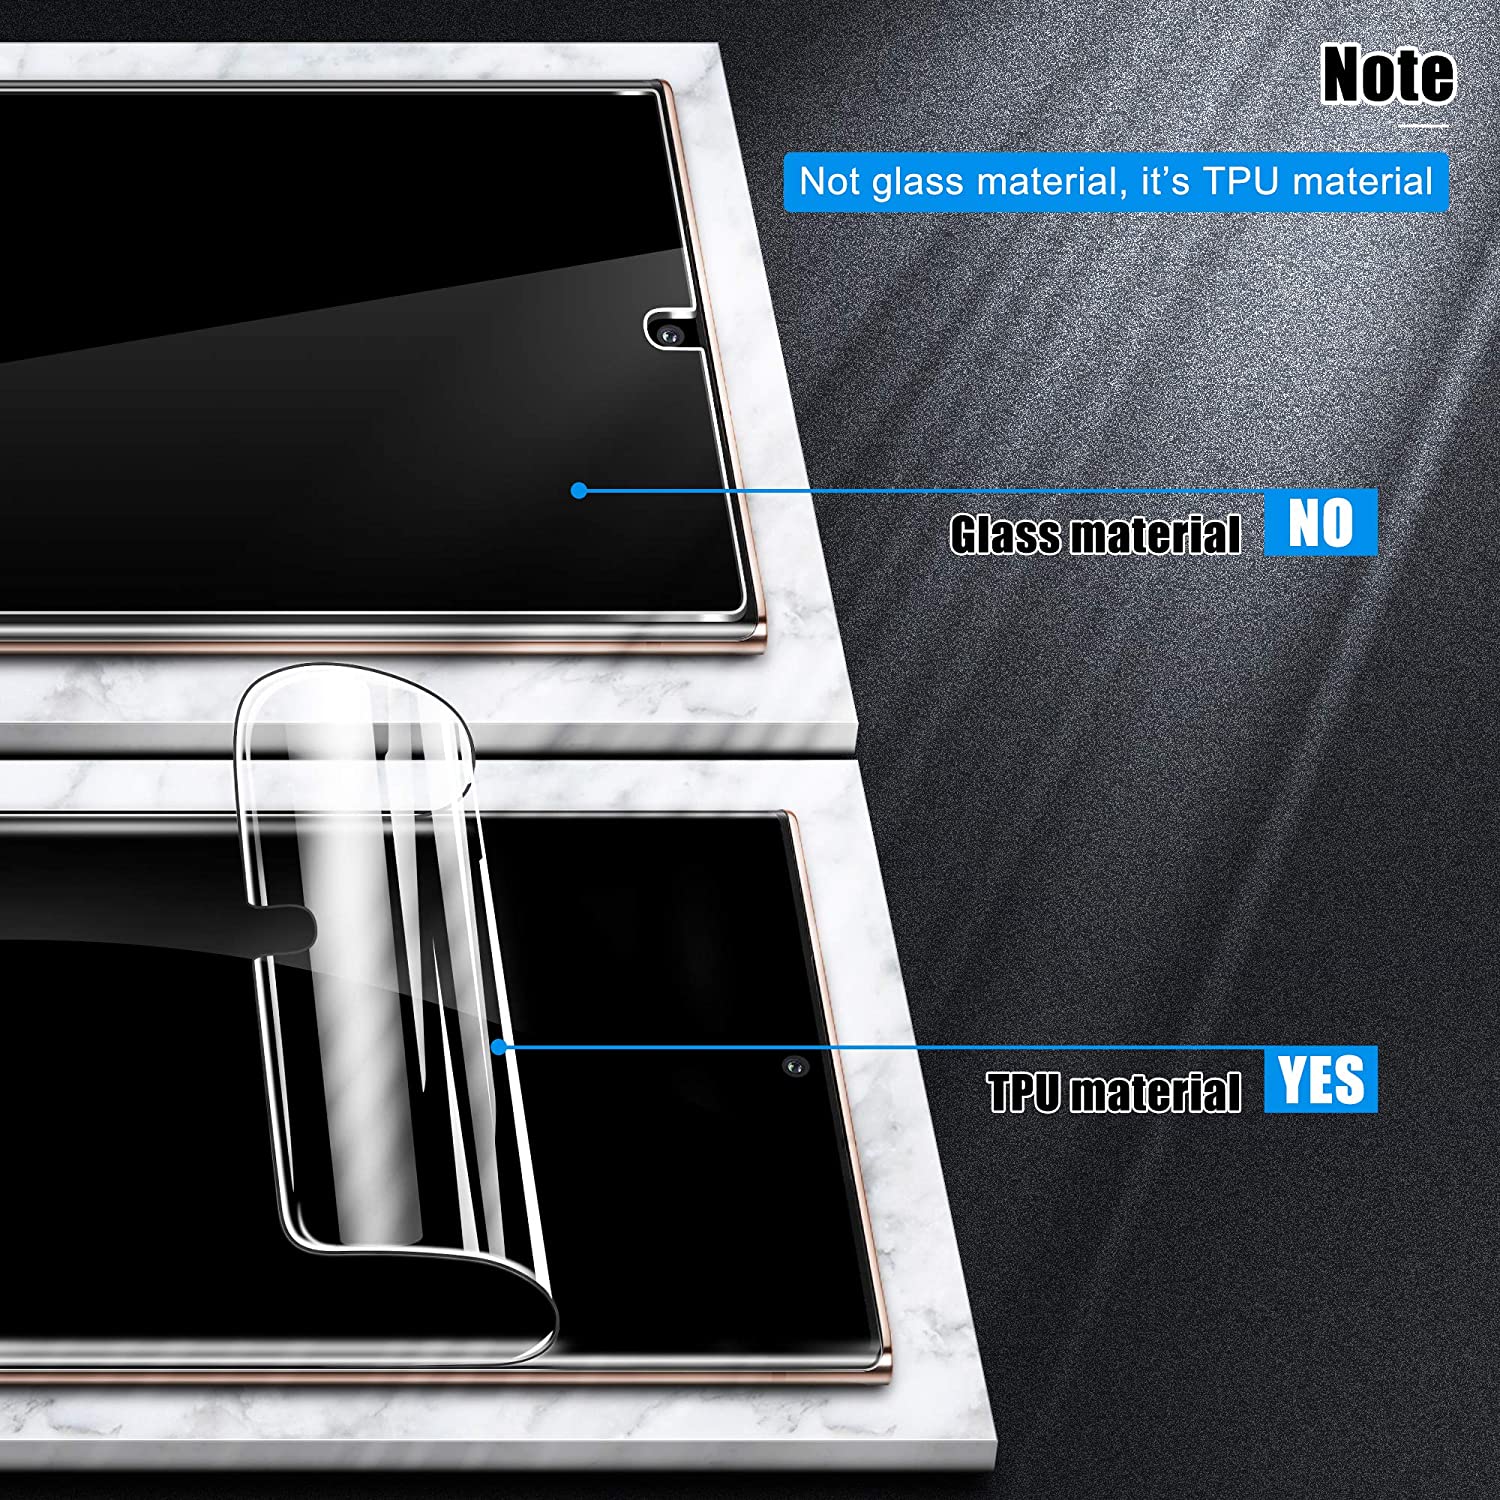 Miếng dán dẻo PPF chống trầy màn hình cho Samsung Galaxy Note 20 Ultra hiệu Vmax